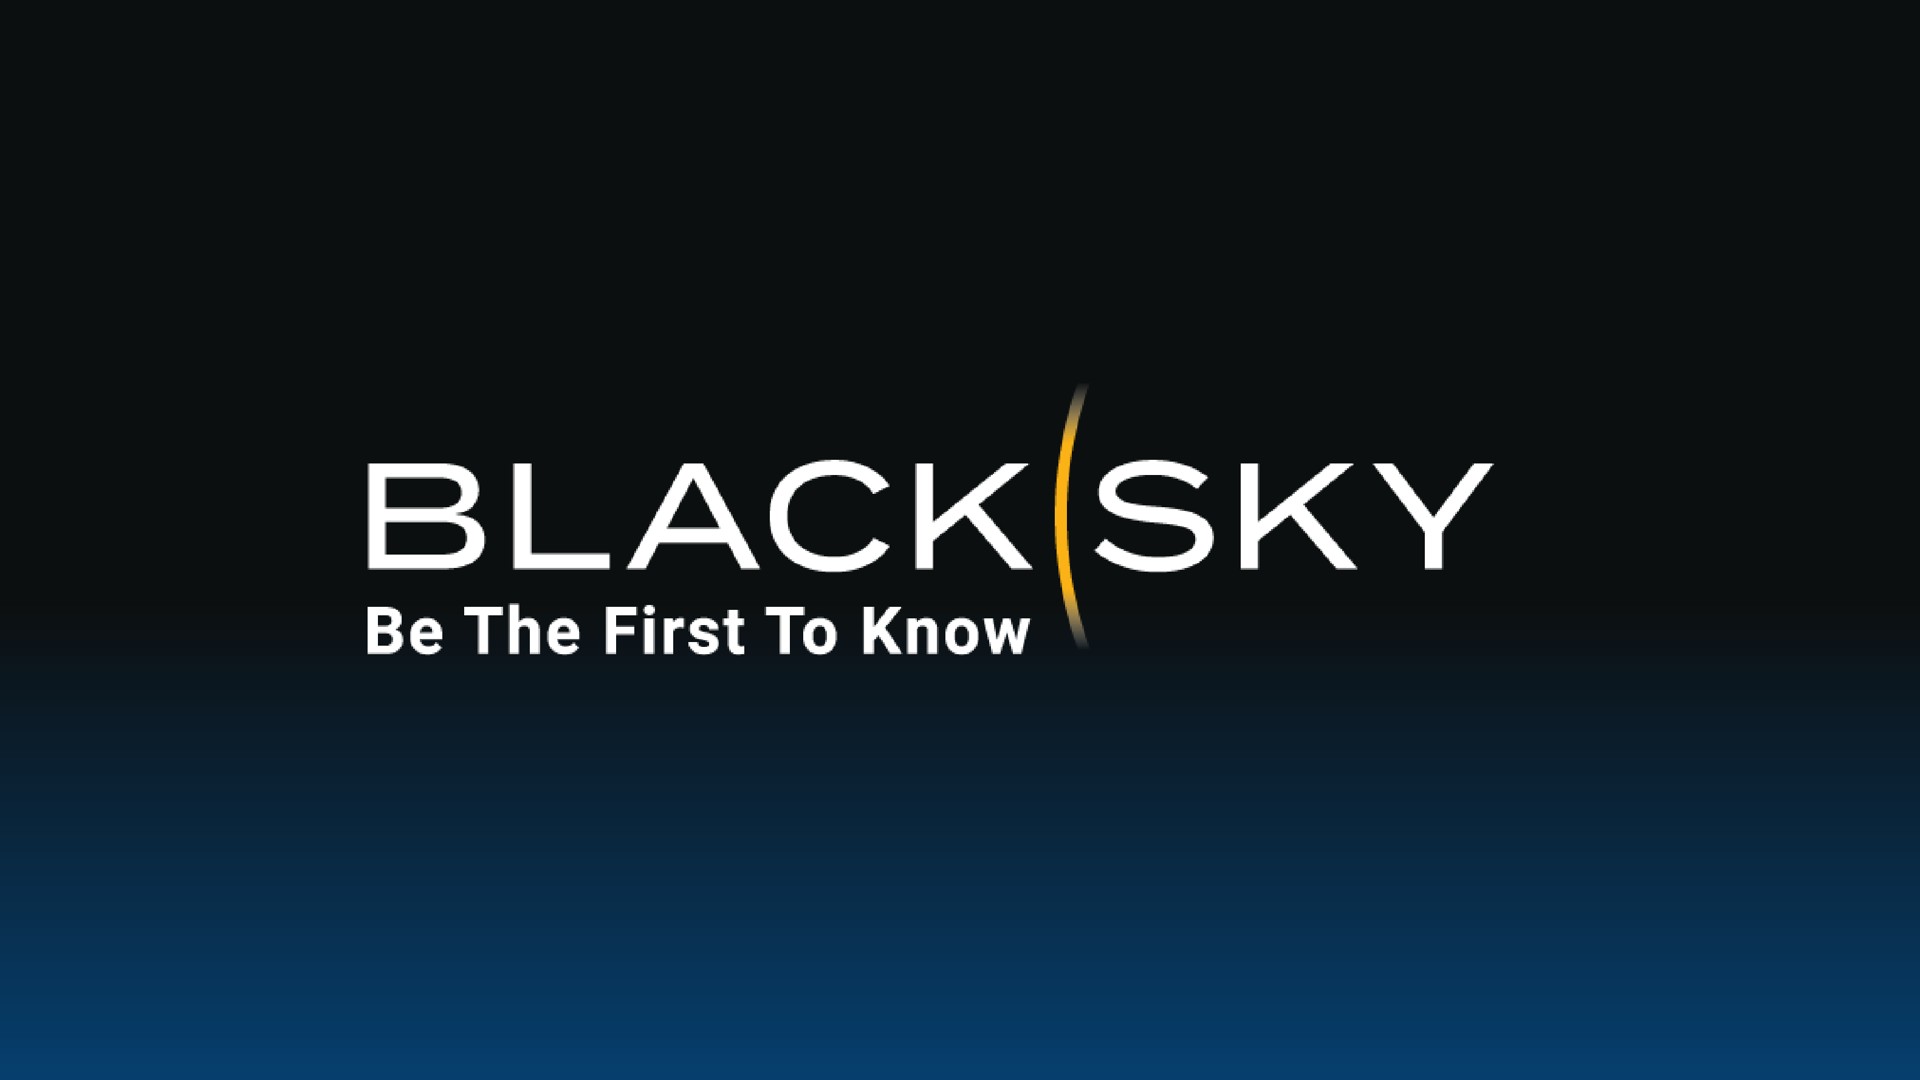 black sky be the first to know | BlackSky